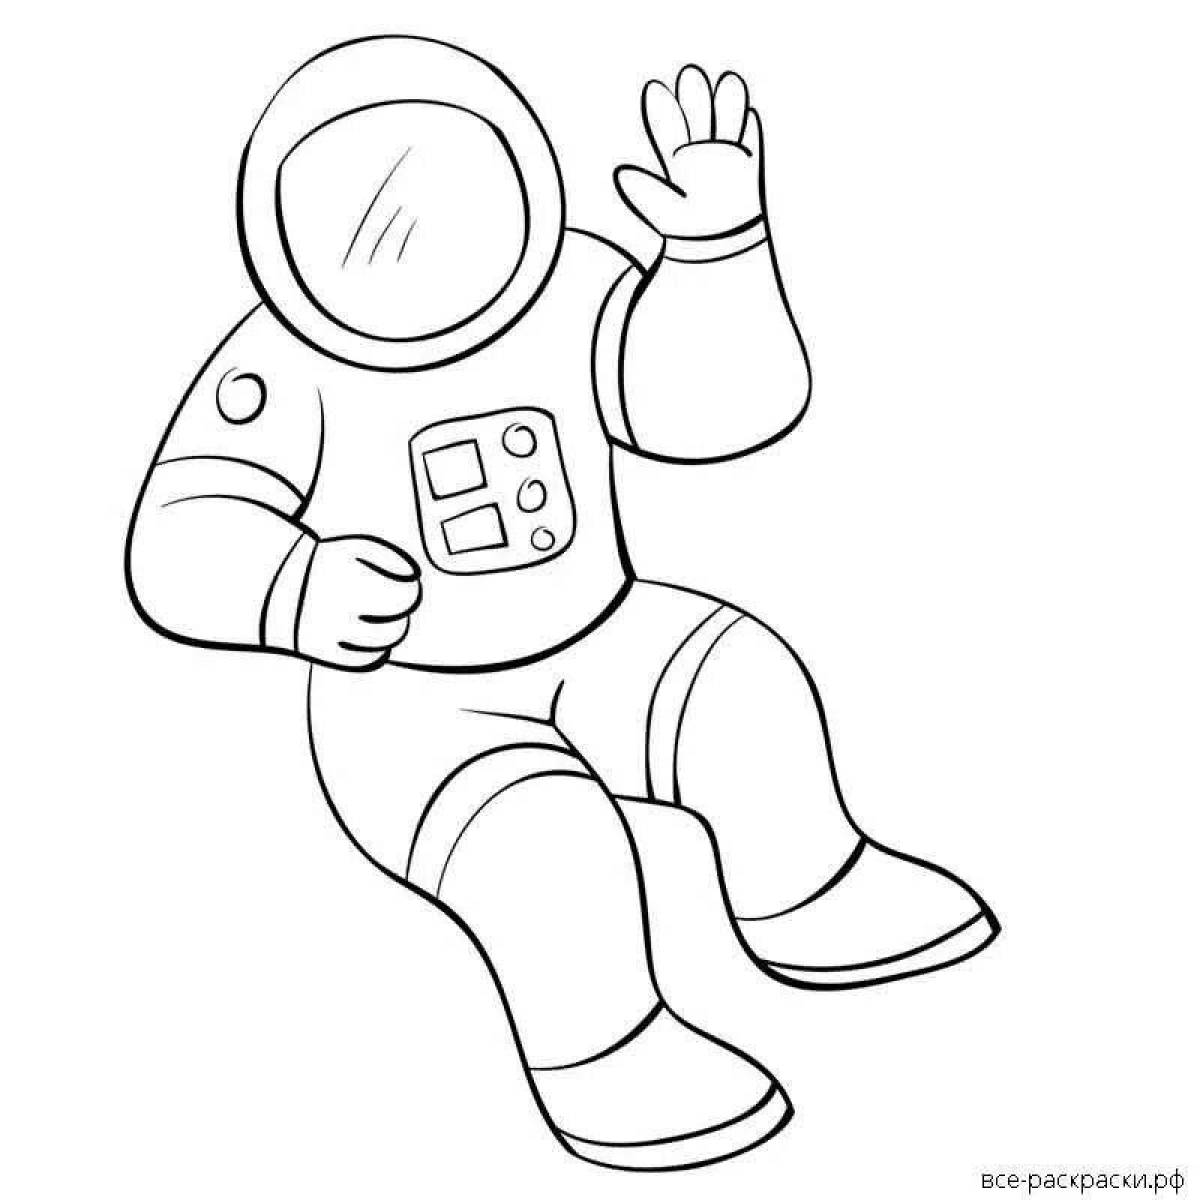 Рисунок космонавта в скафандре. Космонавт раскраска для детей. Космонавт раскраска для малышей. Космонавт для раскрашивания для детей. Раскраска Космонавта в скафандре для детей.